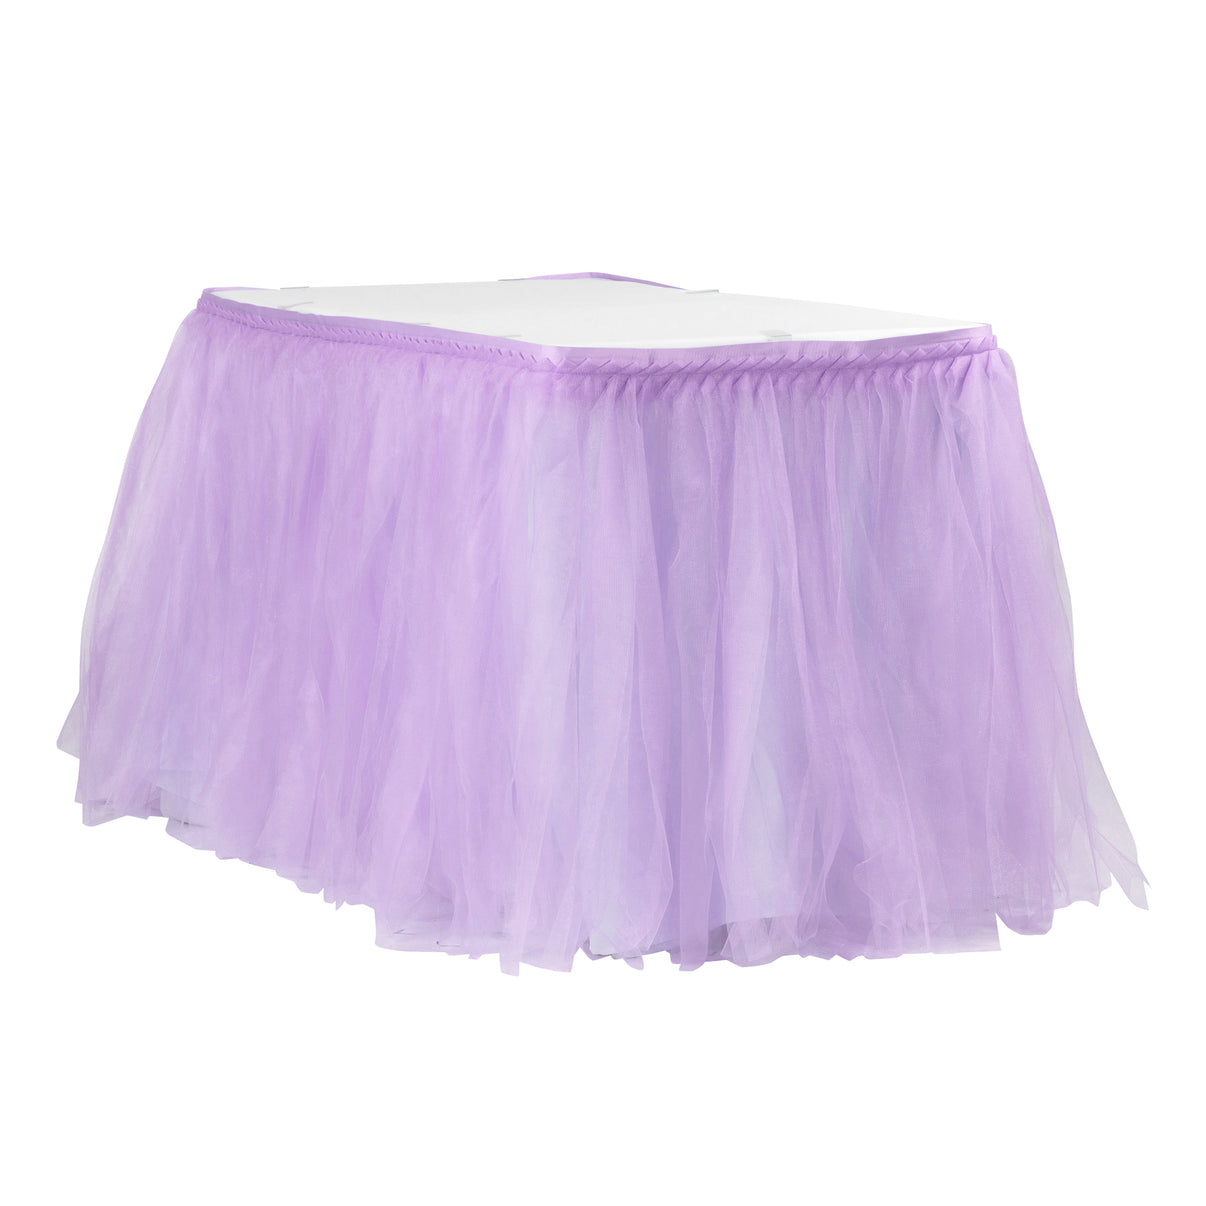 Tulle Tutu 17ft Table Skirt - Lavender– CV Linens